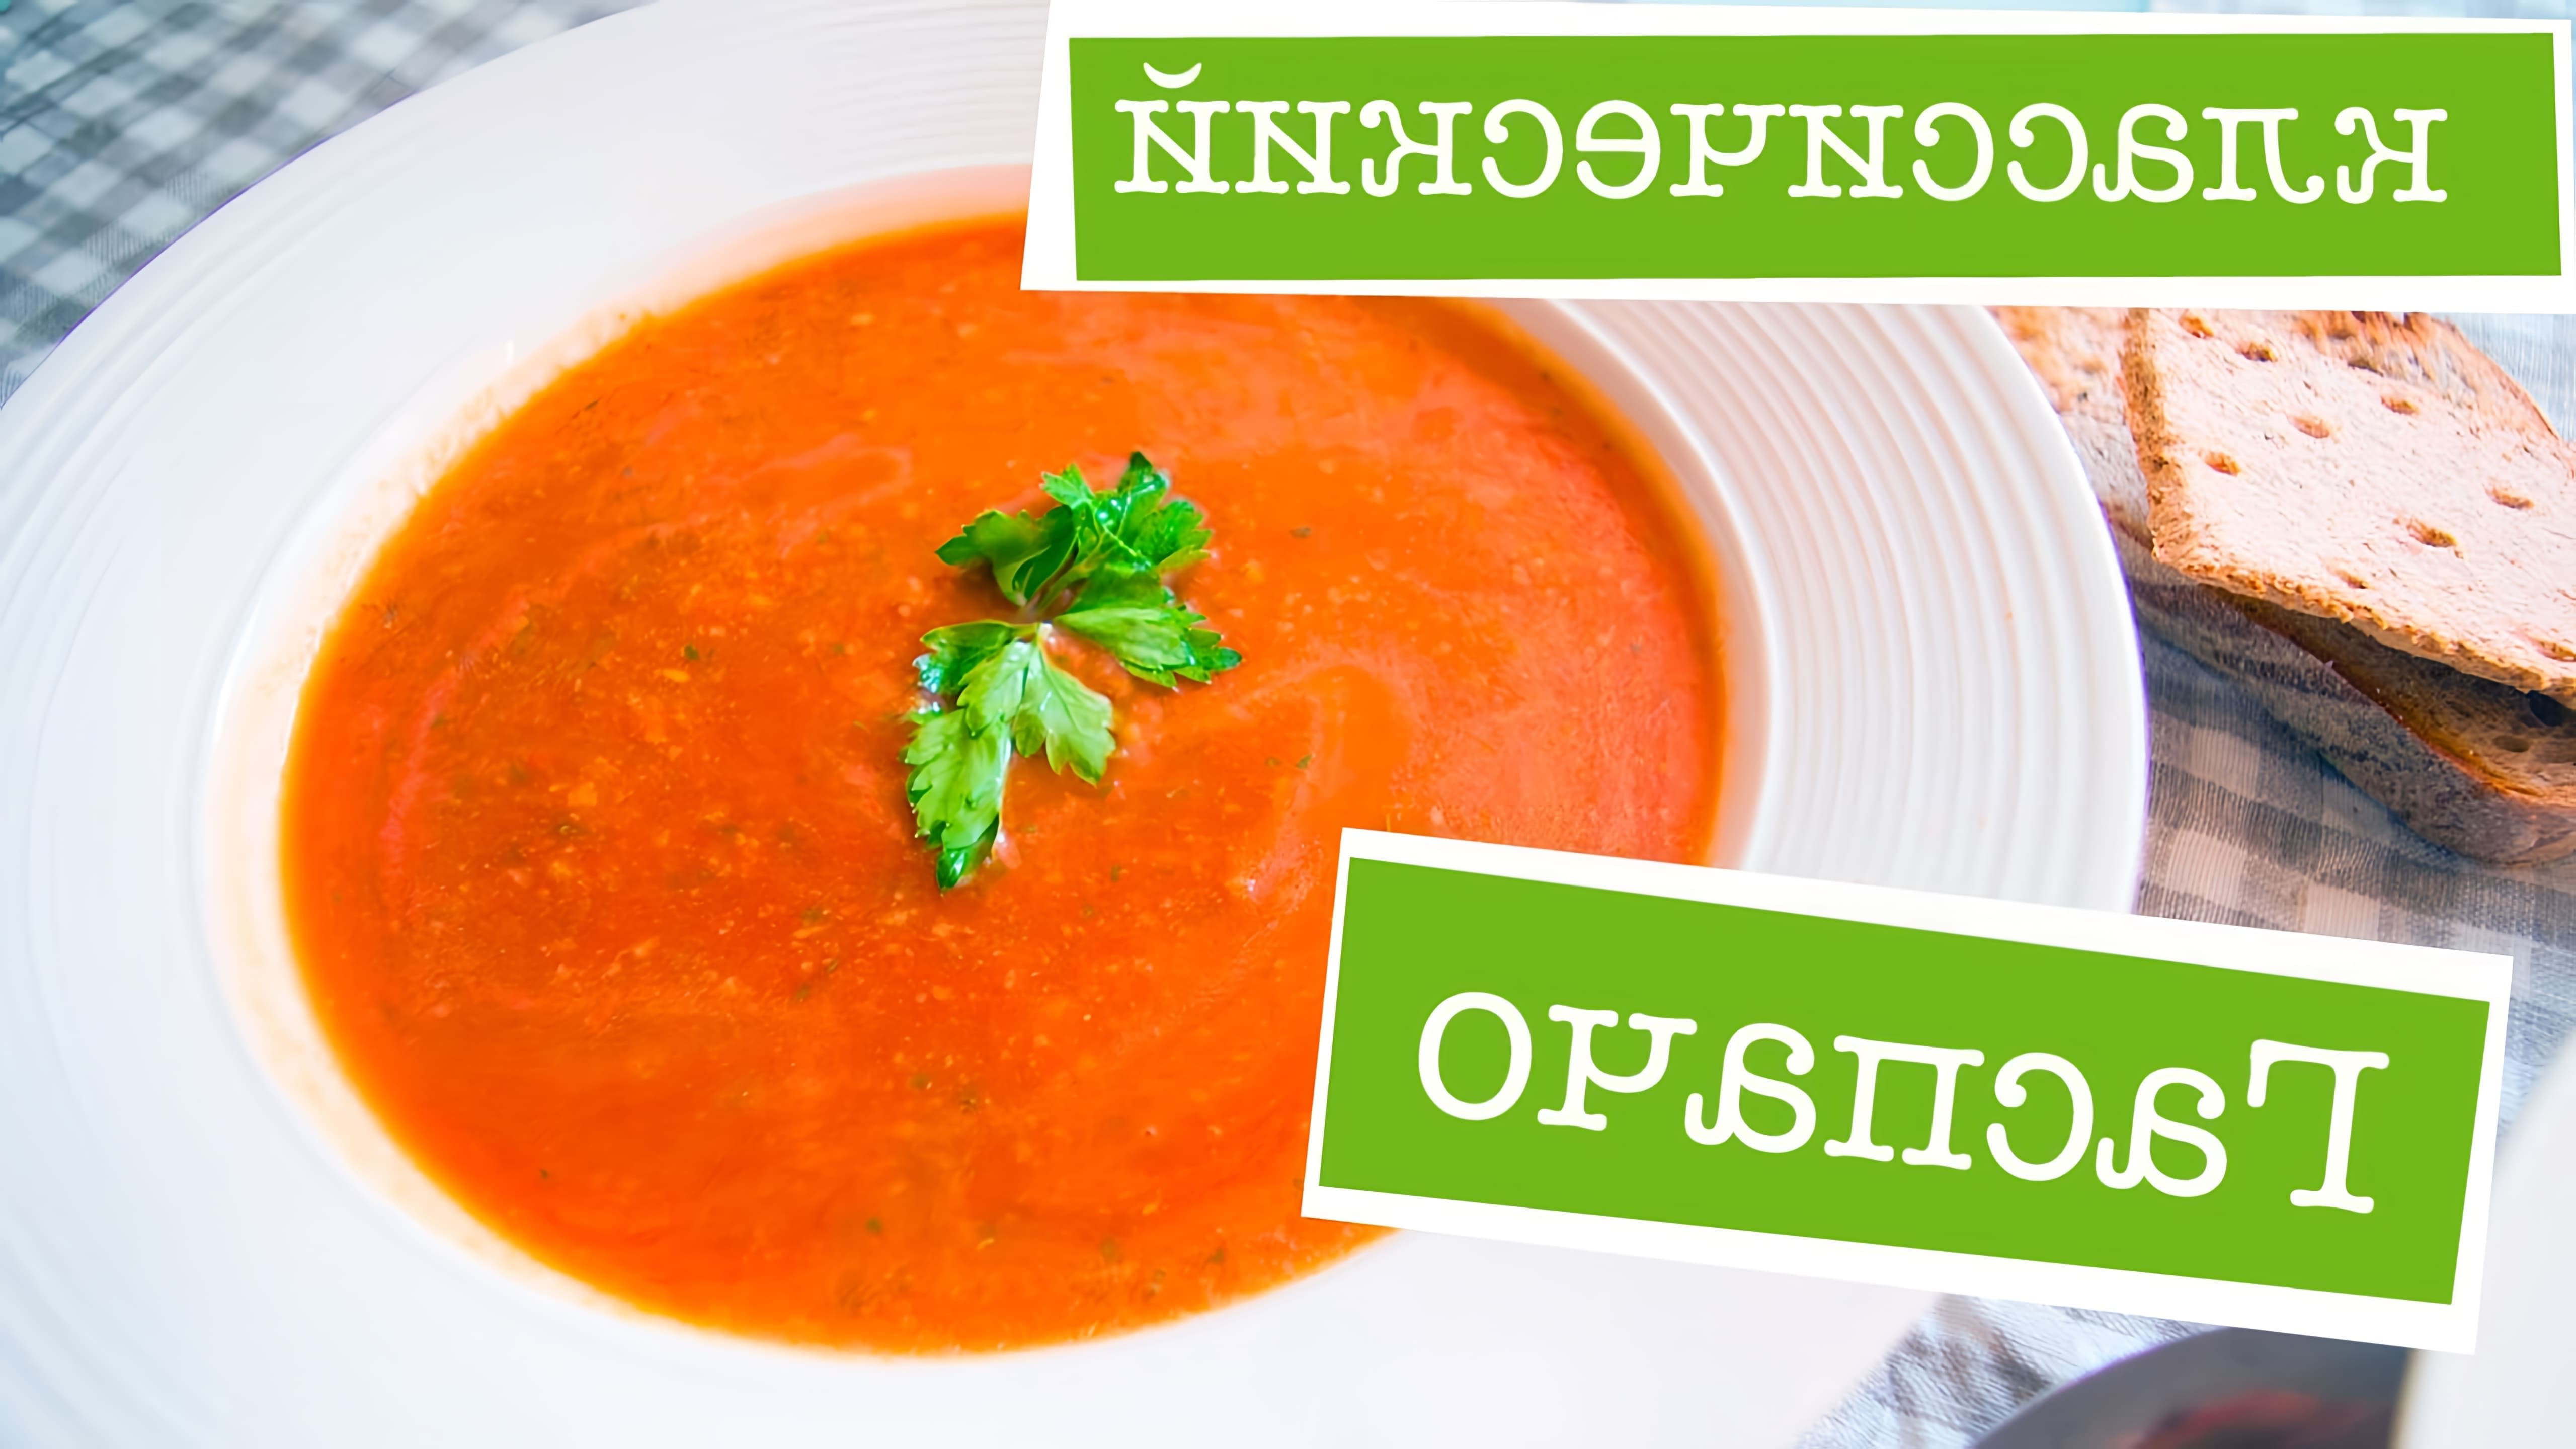 В этом видео демонстрируется рецепт классического гаспачо - томатного супа, который является одним из самых любимых холодных супов автора